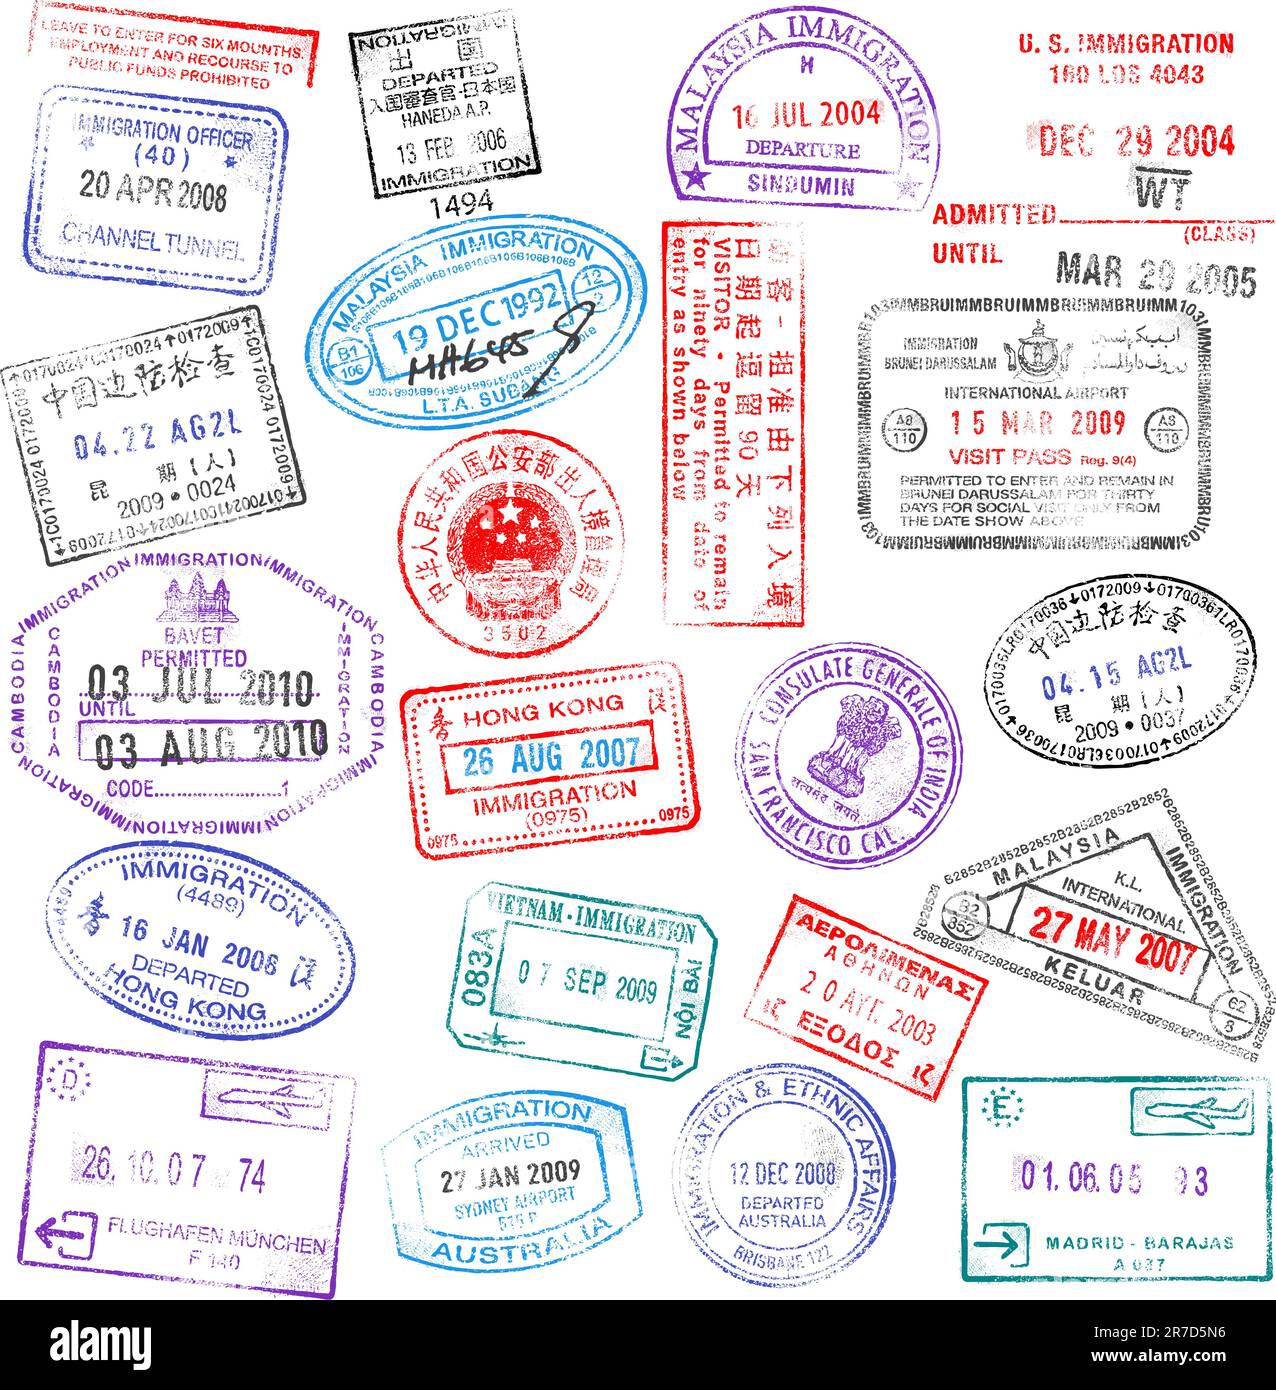 Una collezione di timbri per passaporti estremamente dettagliati, tutti ispirati ai veri timbri per passaporti, ma completamente creati con Illustrator CS3. Illustrazione Vettoriale